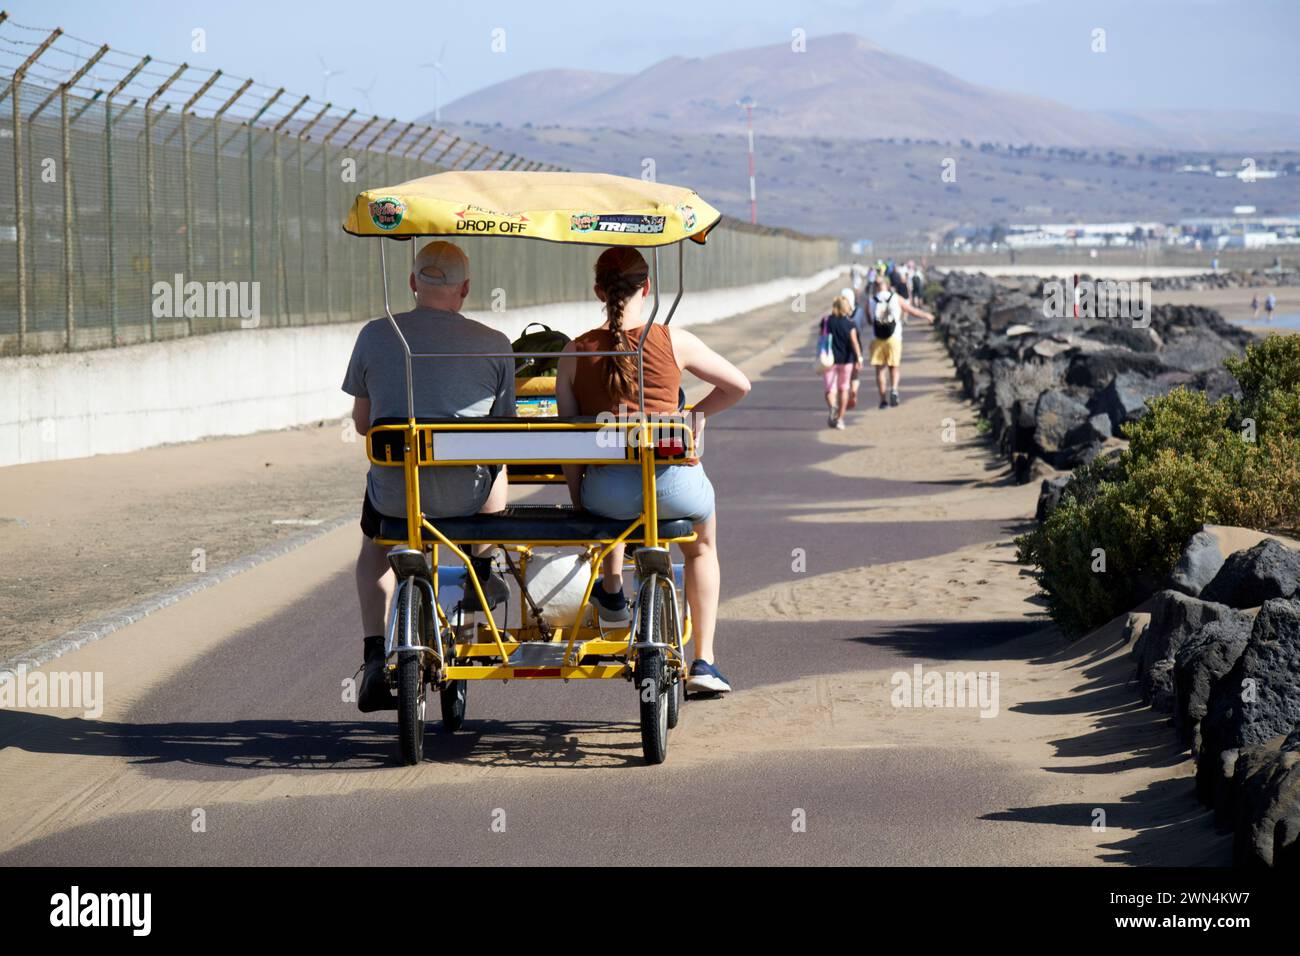 Familienfahrradverleih auf dem Radweg in der Nähe des Flughafens Lanzarote, der Kanarischen Inseln, spanien Stockfoto